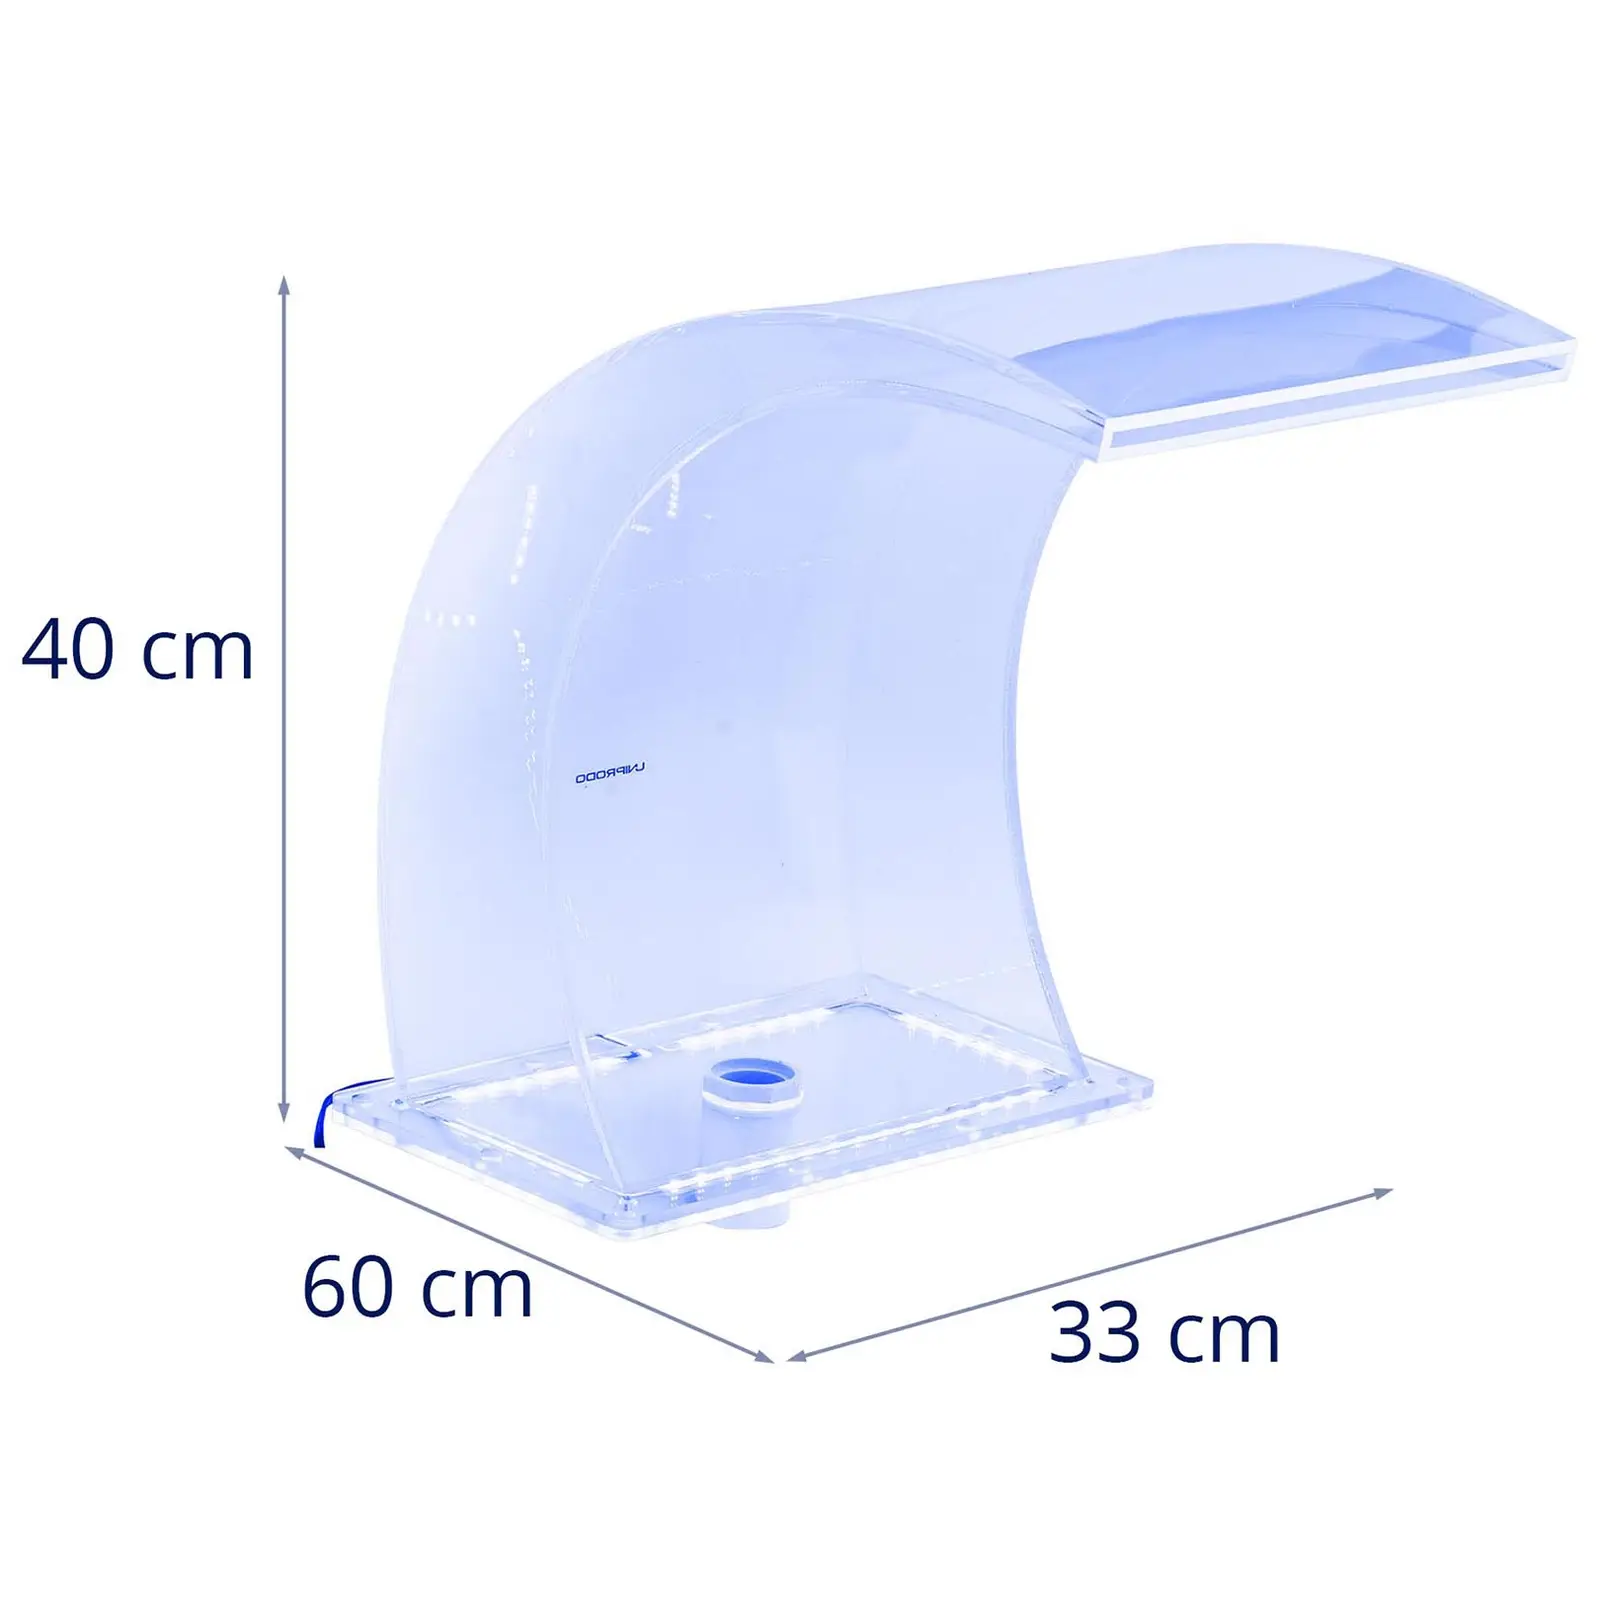 Wylewka wodospadowa - 33 cm - oświetlenie LED - niebieski/biały